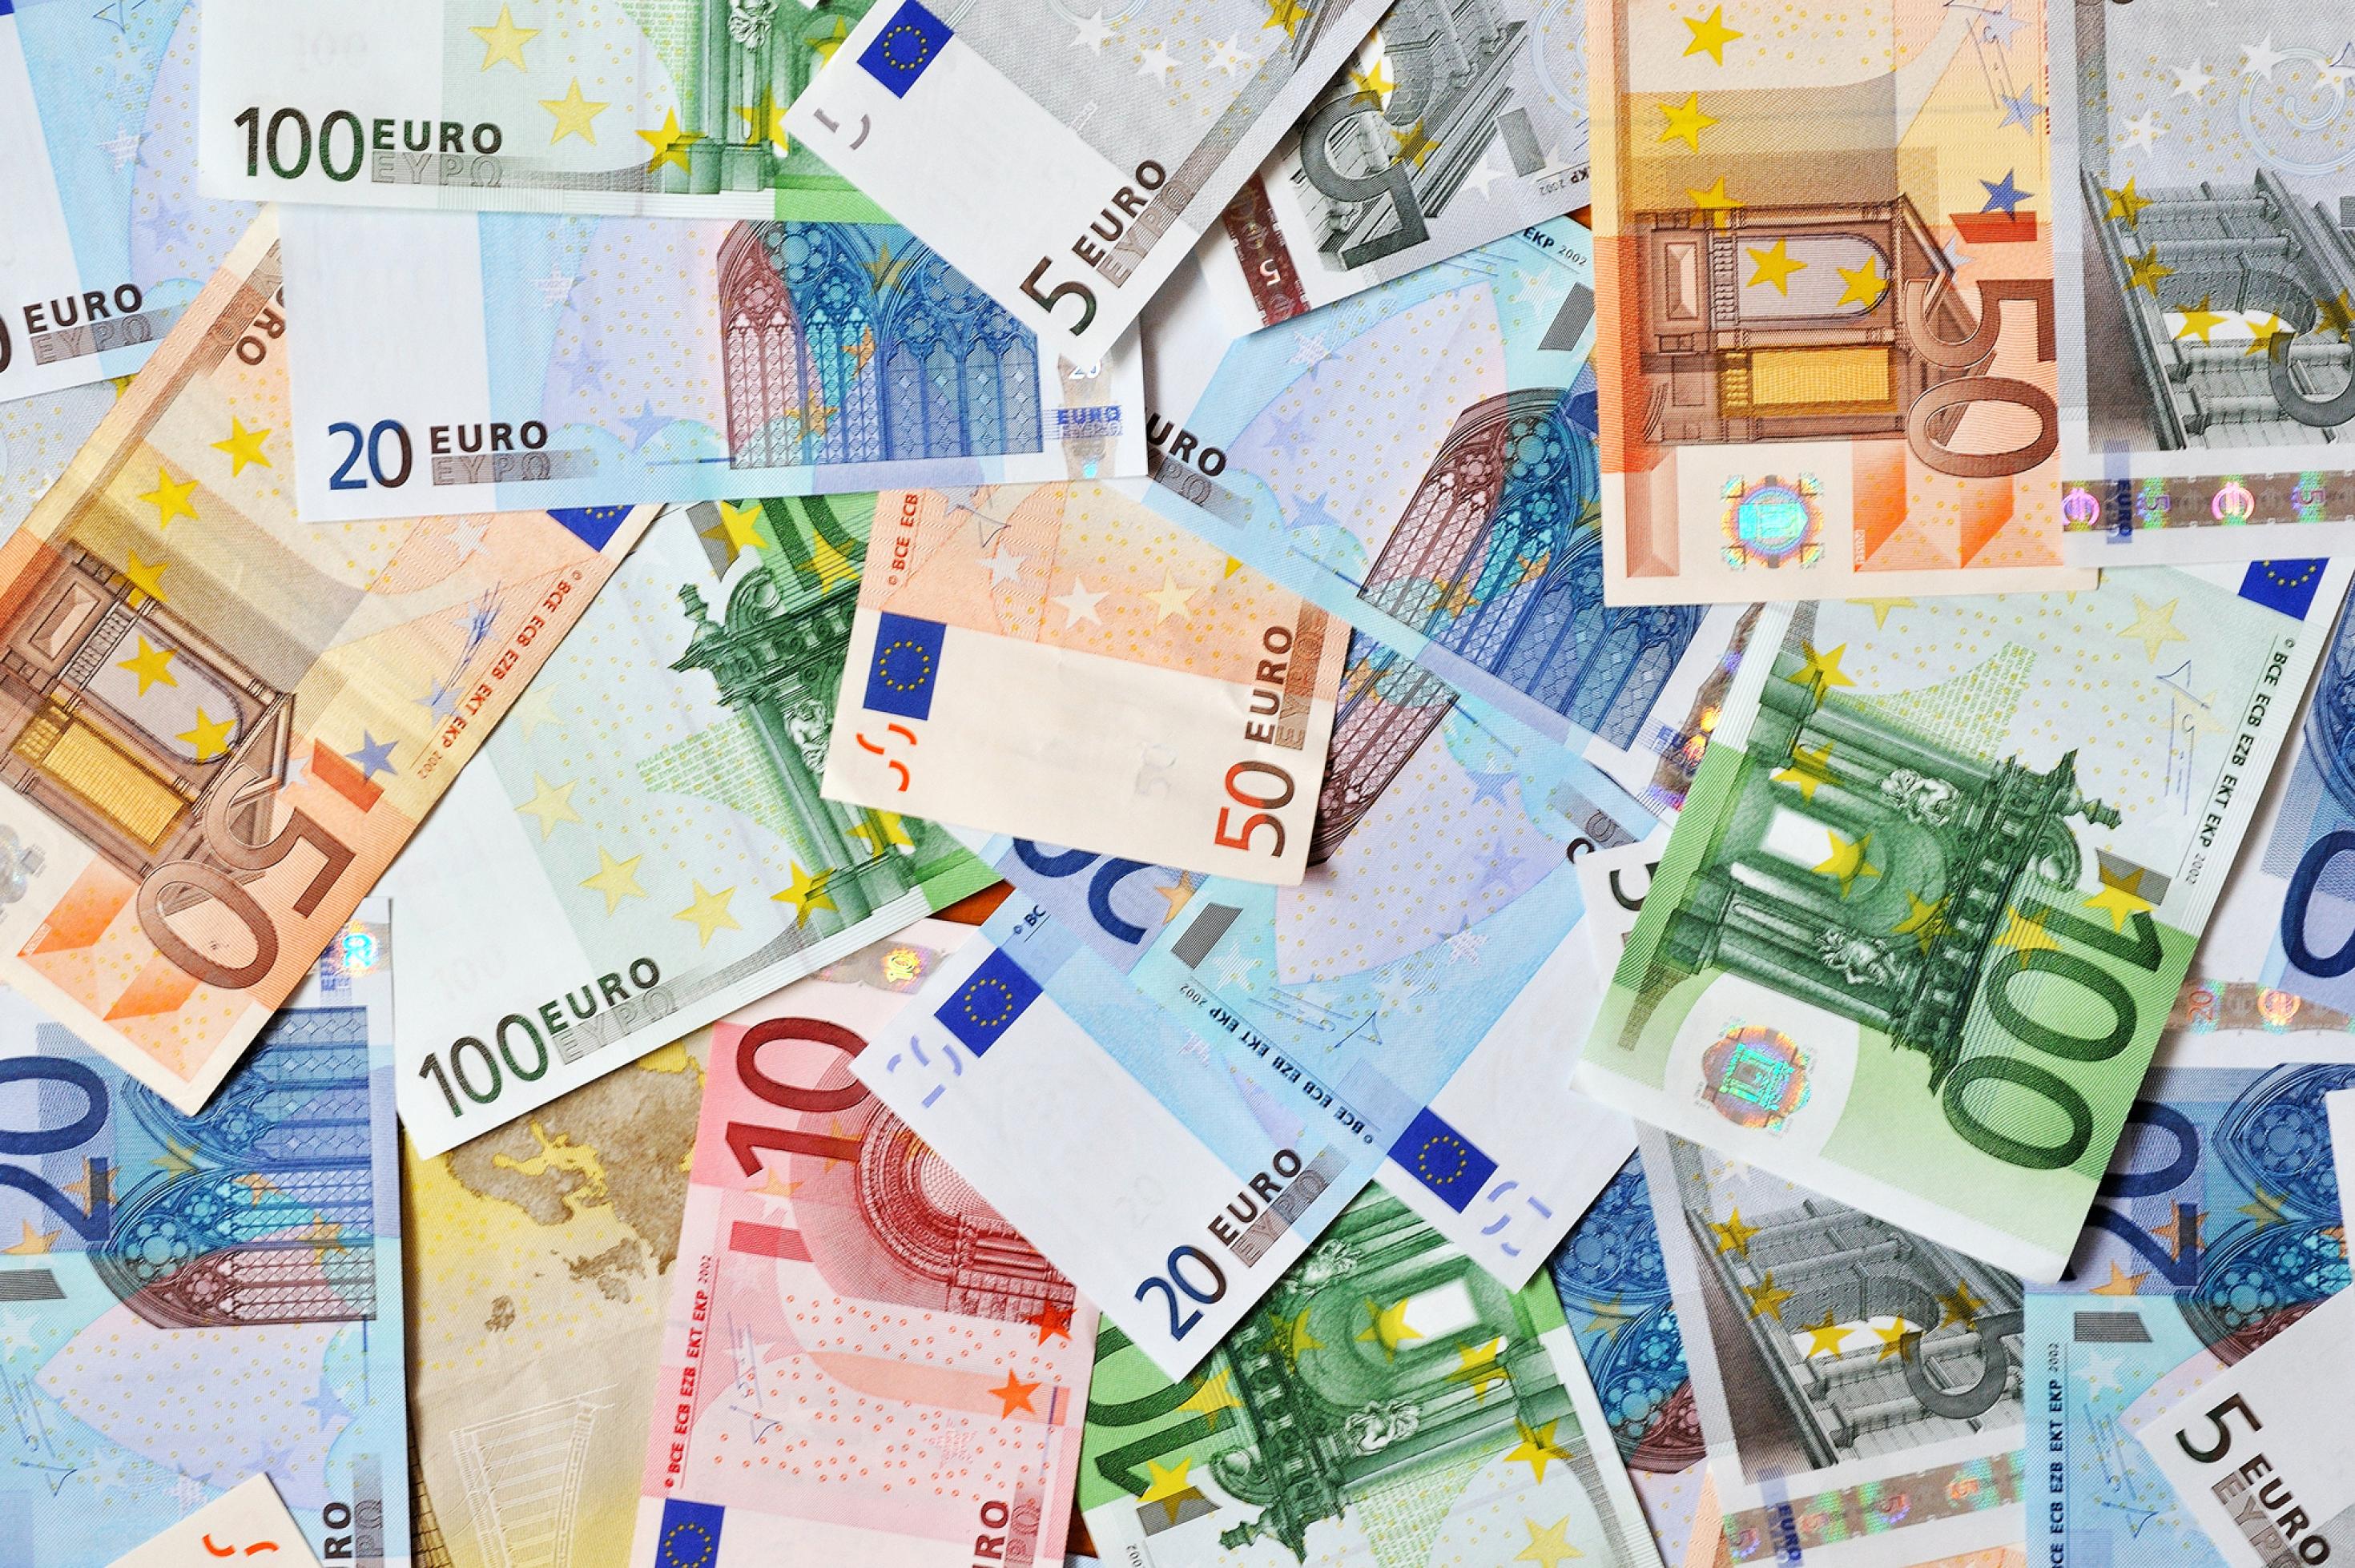 Eurogeldscheine verschiedener Werte auf dem Boden liegend.